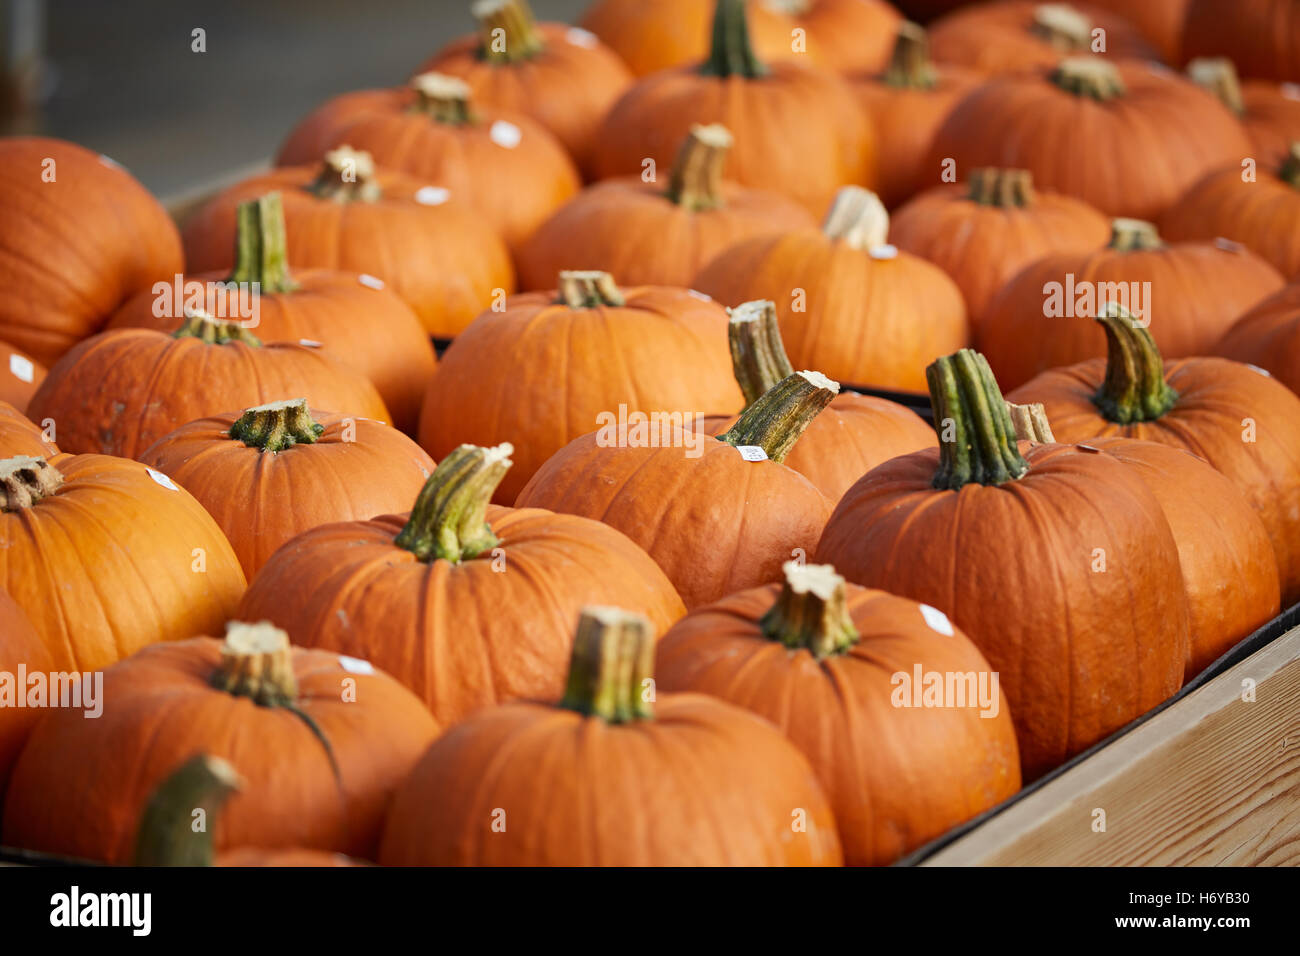 Zucche autunno autunno cibo fresco arancione striata di colorazione della pelle pieno di stallo molti affollata scolpiti jack-o'-lanterne decorazione Hallo Foto Stock